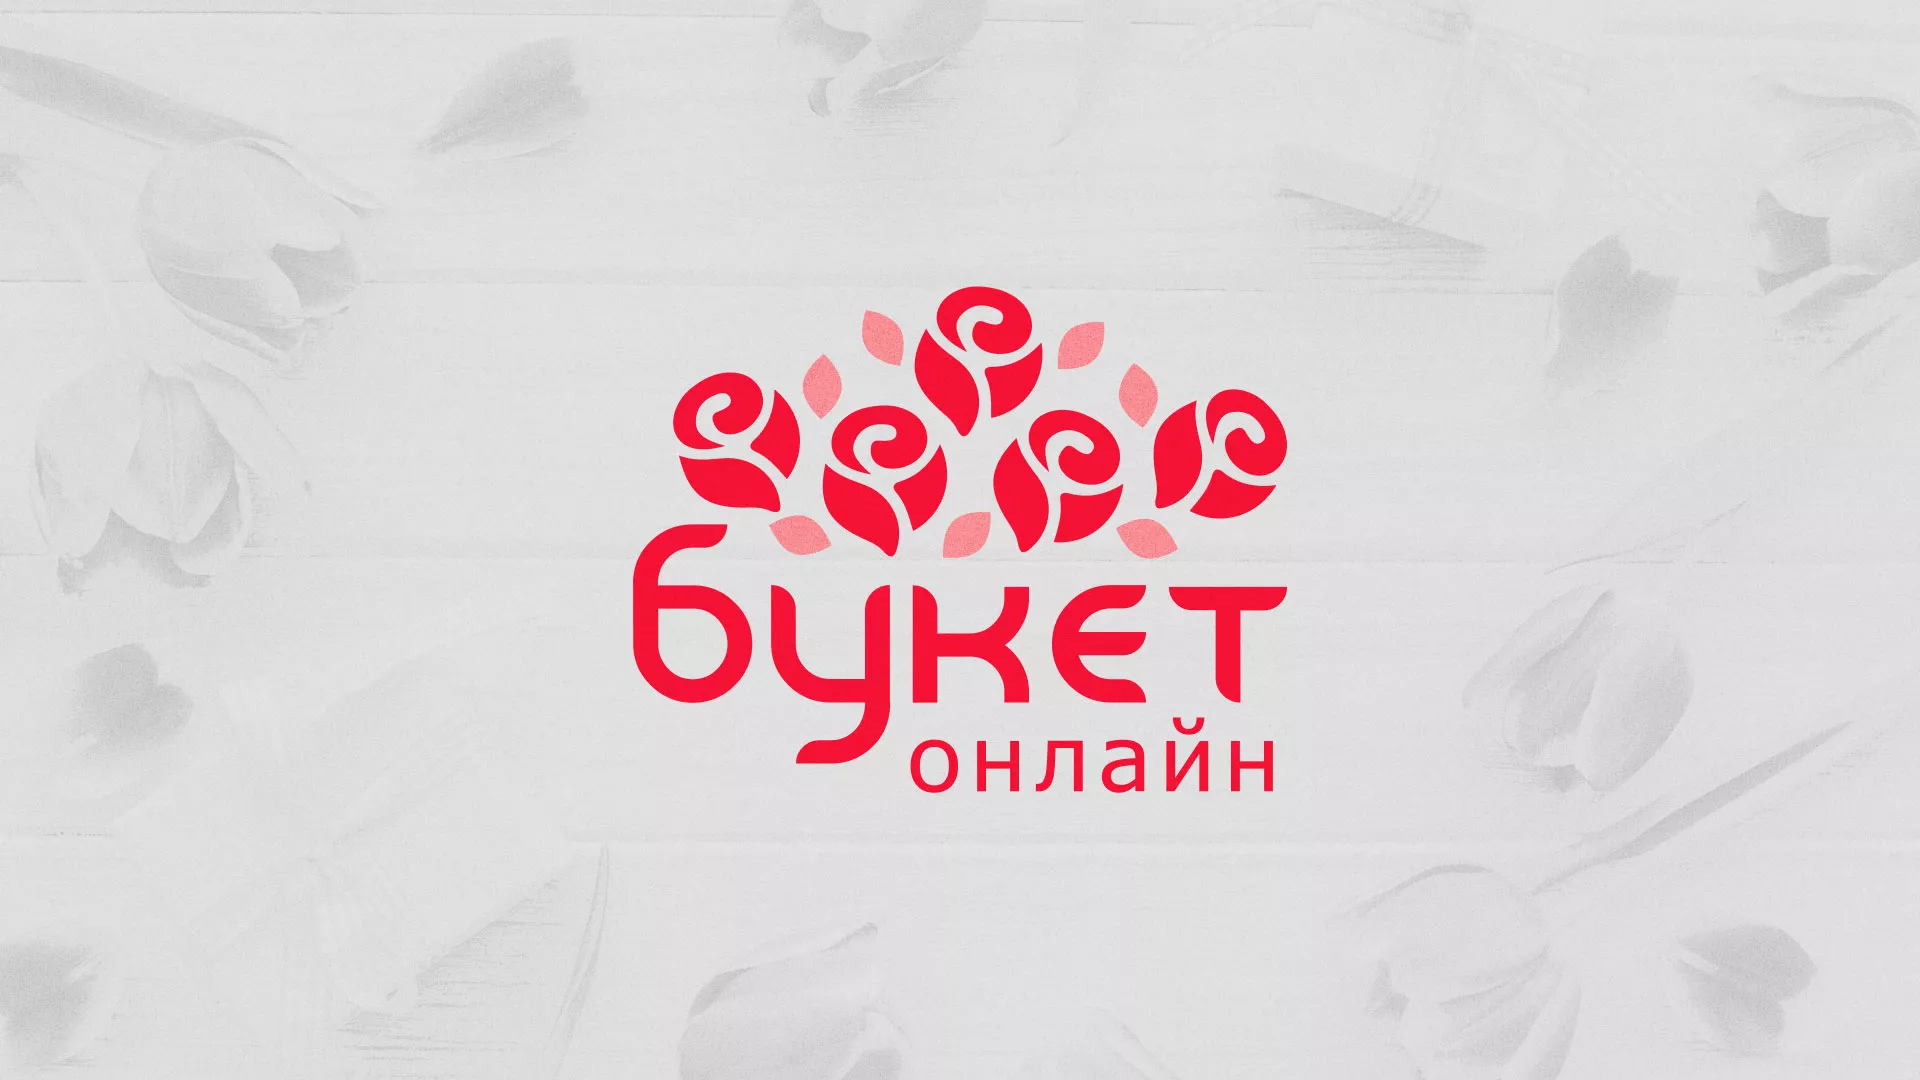 Создание интернет-магазина «Букет-онлайн» по цветам в Правдинске